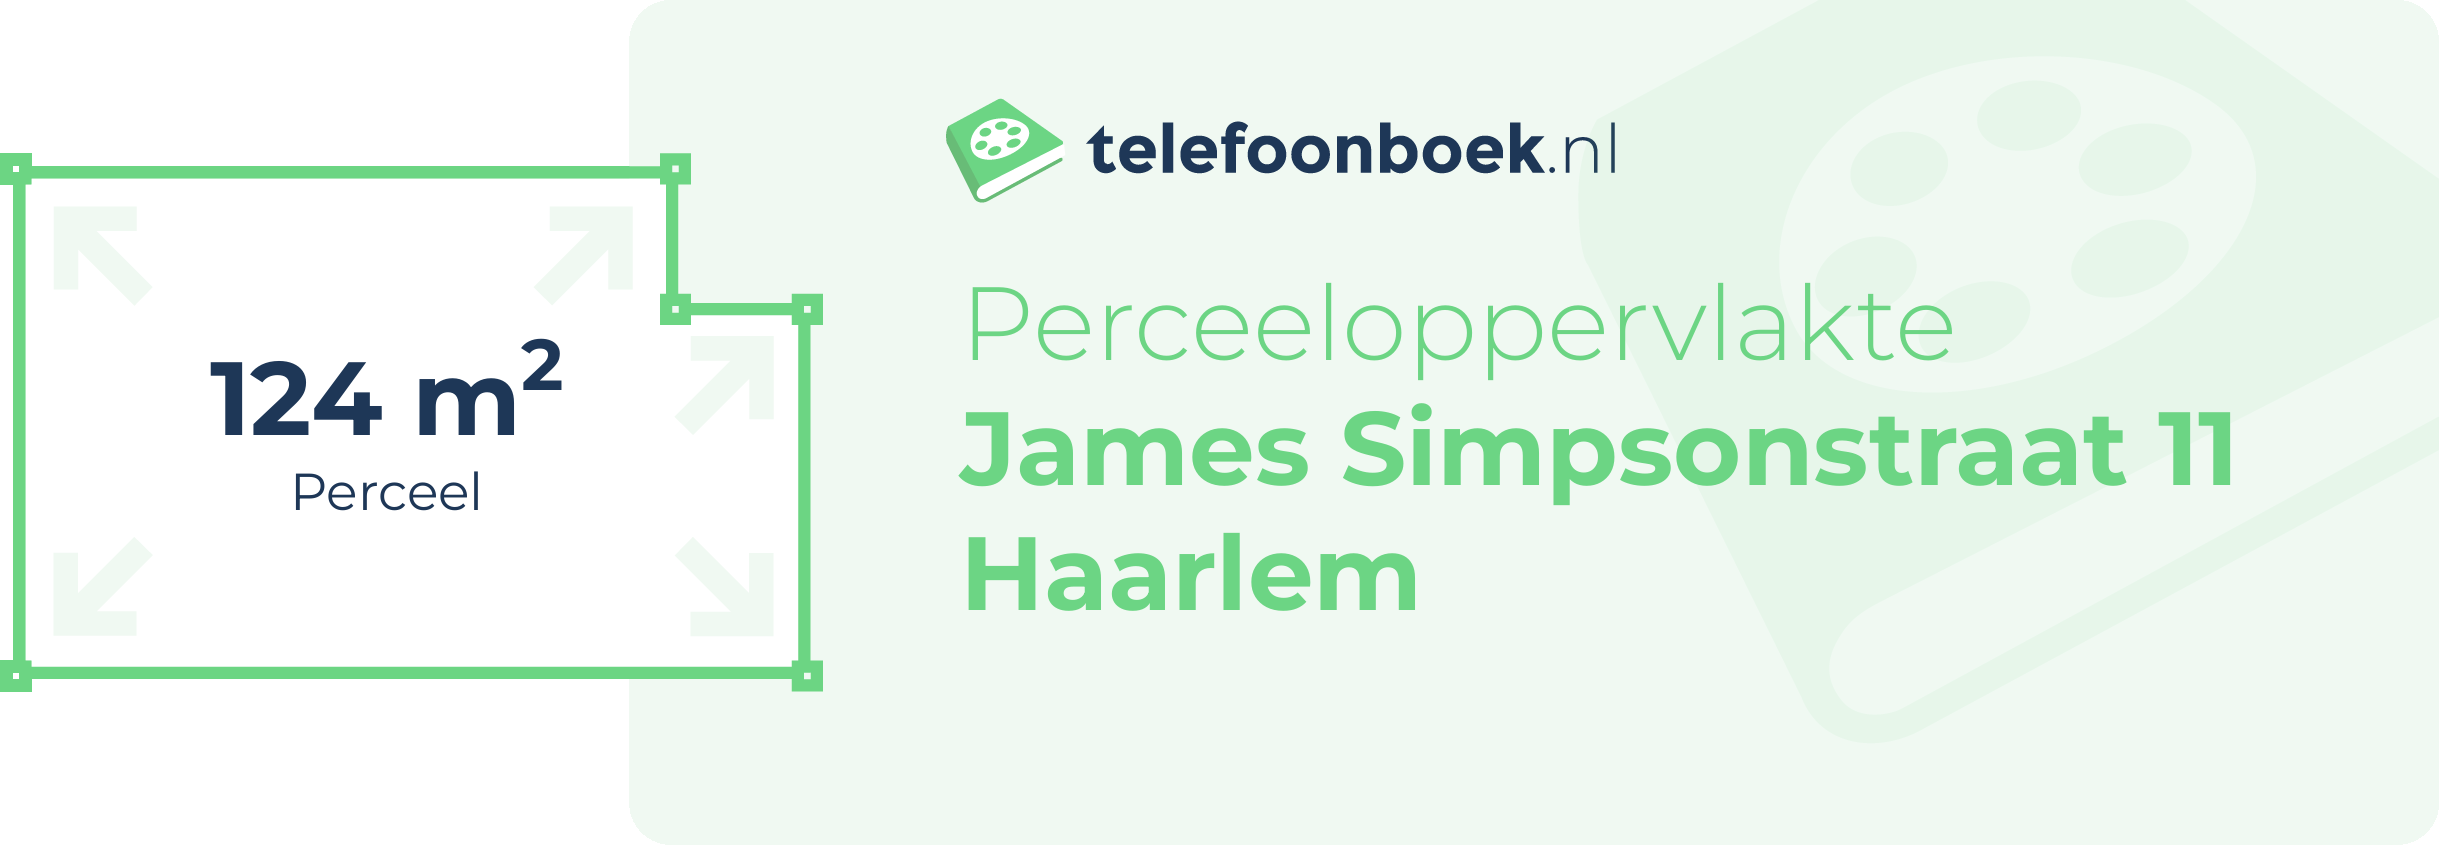 Perceeloppervlakte James Simpsonstraat 11 Haarlem